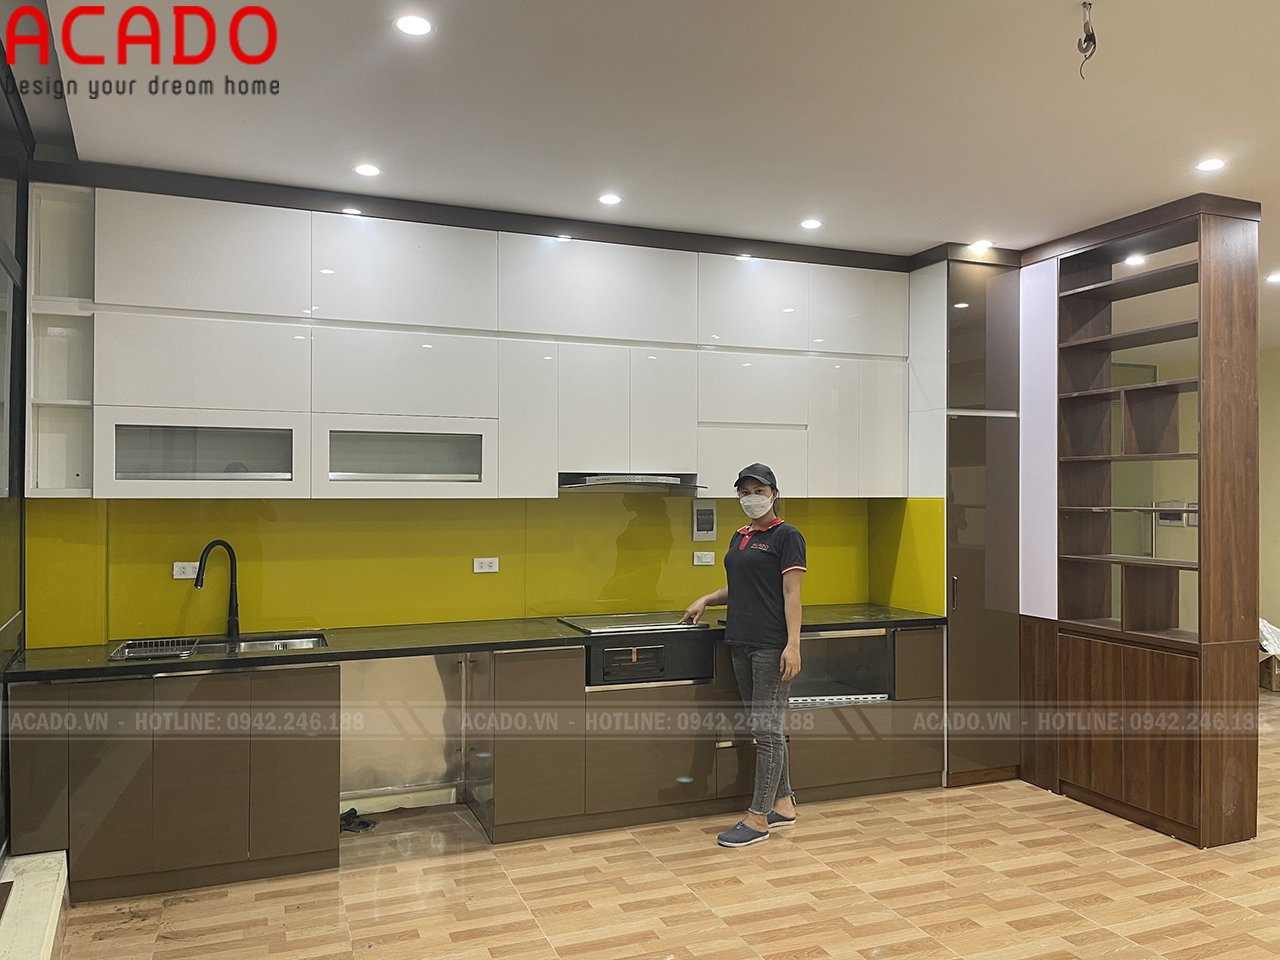 Tủ bếp kết hợp kính ốp tường màu vàng chanh đem đến không gian trẻ trung và năng động.